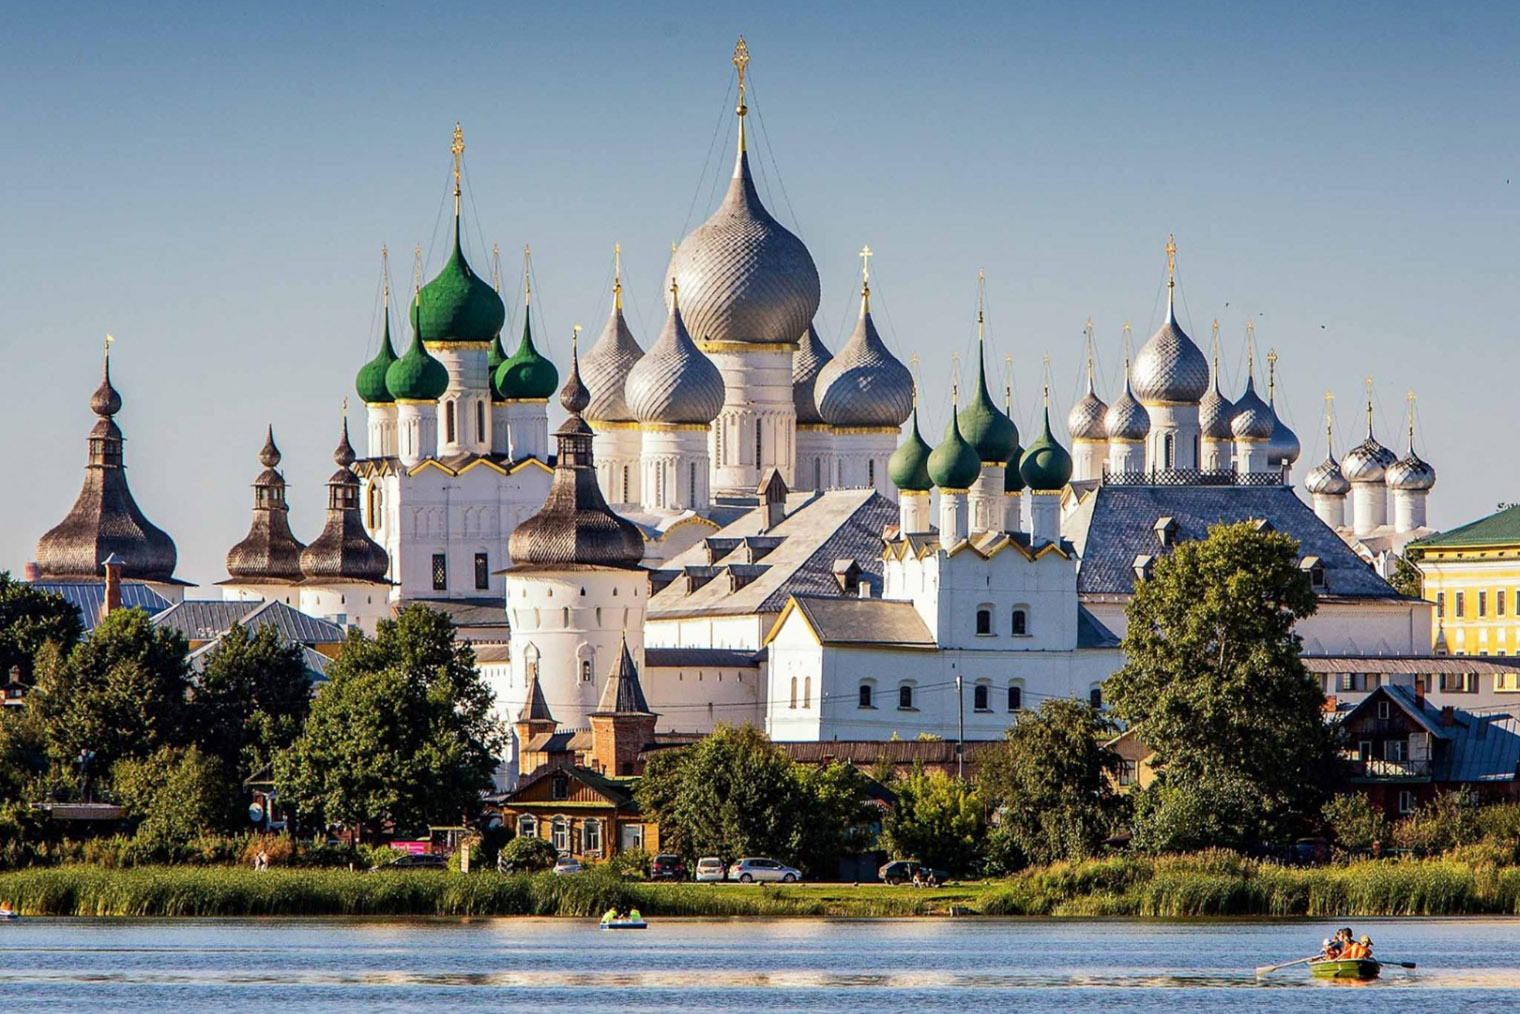 У Ростовского кремля 11 башен. Источник: rostmuseum.ru